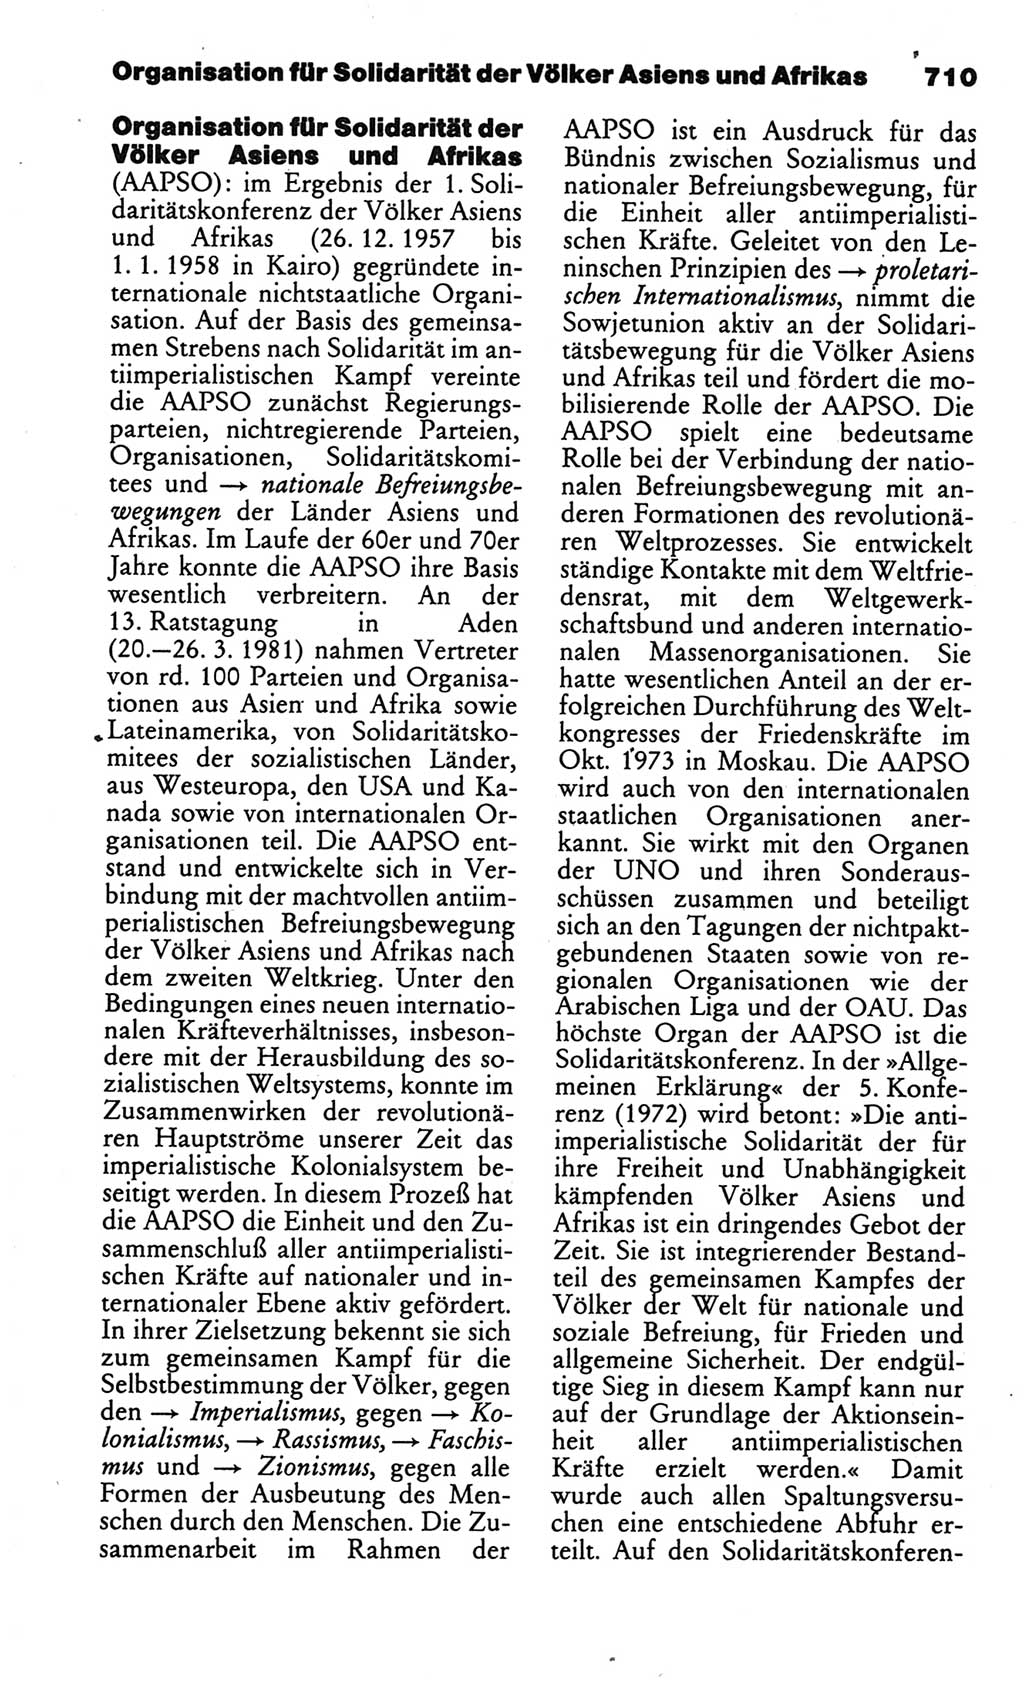 Kleines politisches Wörterbuch [Deutsche Demokratische Republik (DDR)] 1986, Seite 710 (Kl. pol. Wb. DDR 1986, S. 710)